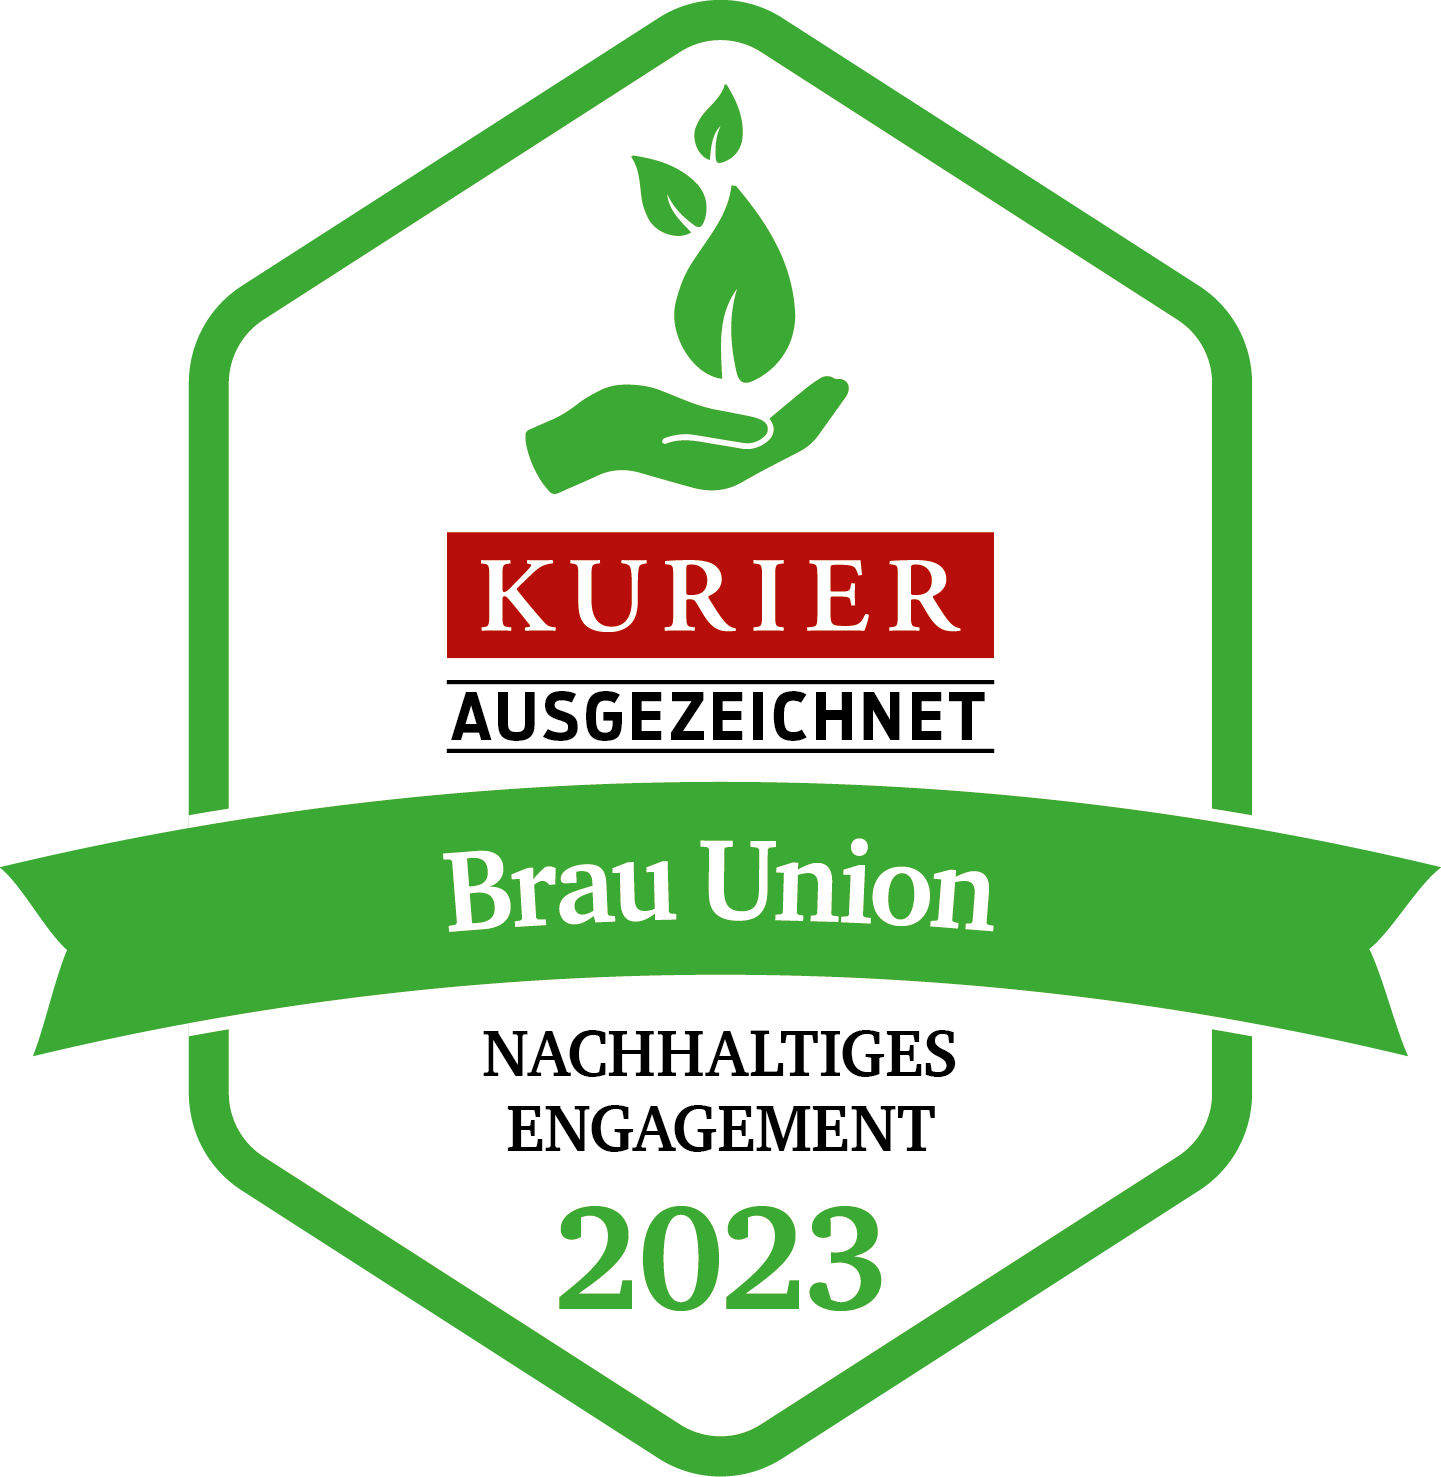 Kurier Gütesiegel "Nachhaltiges Engagement 2022"